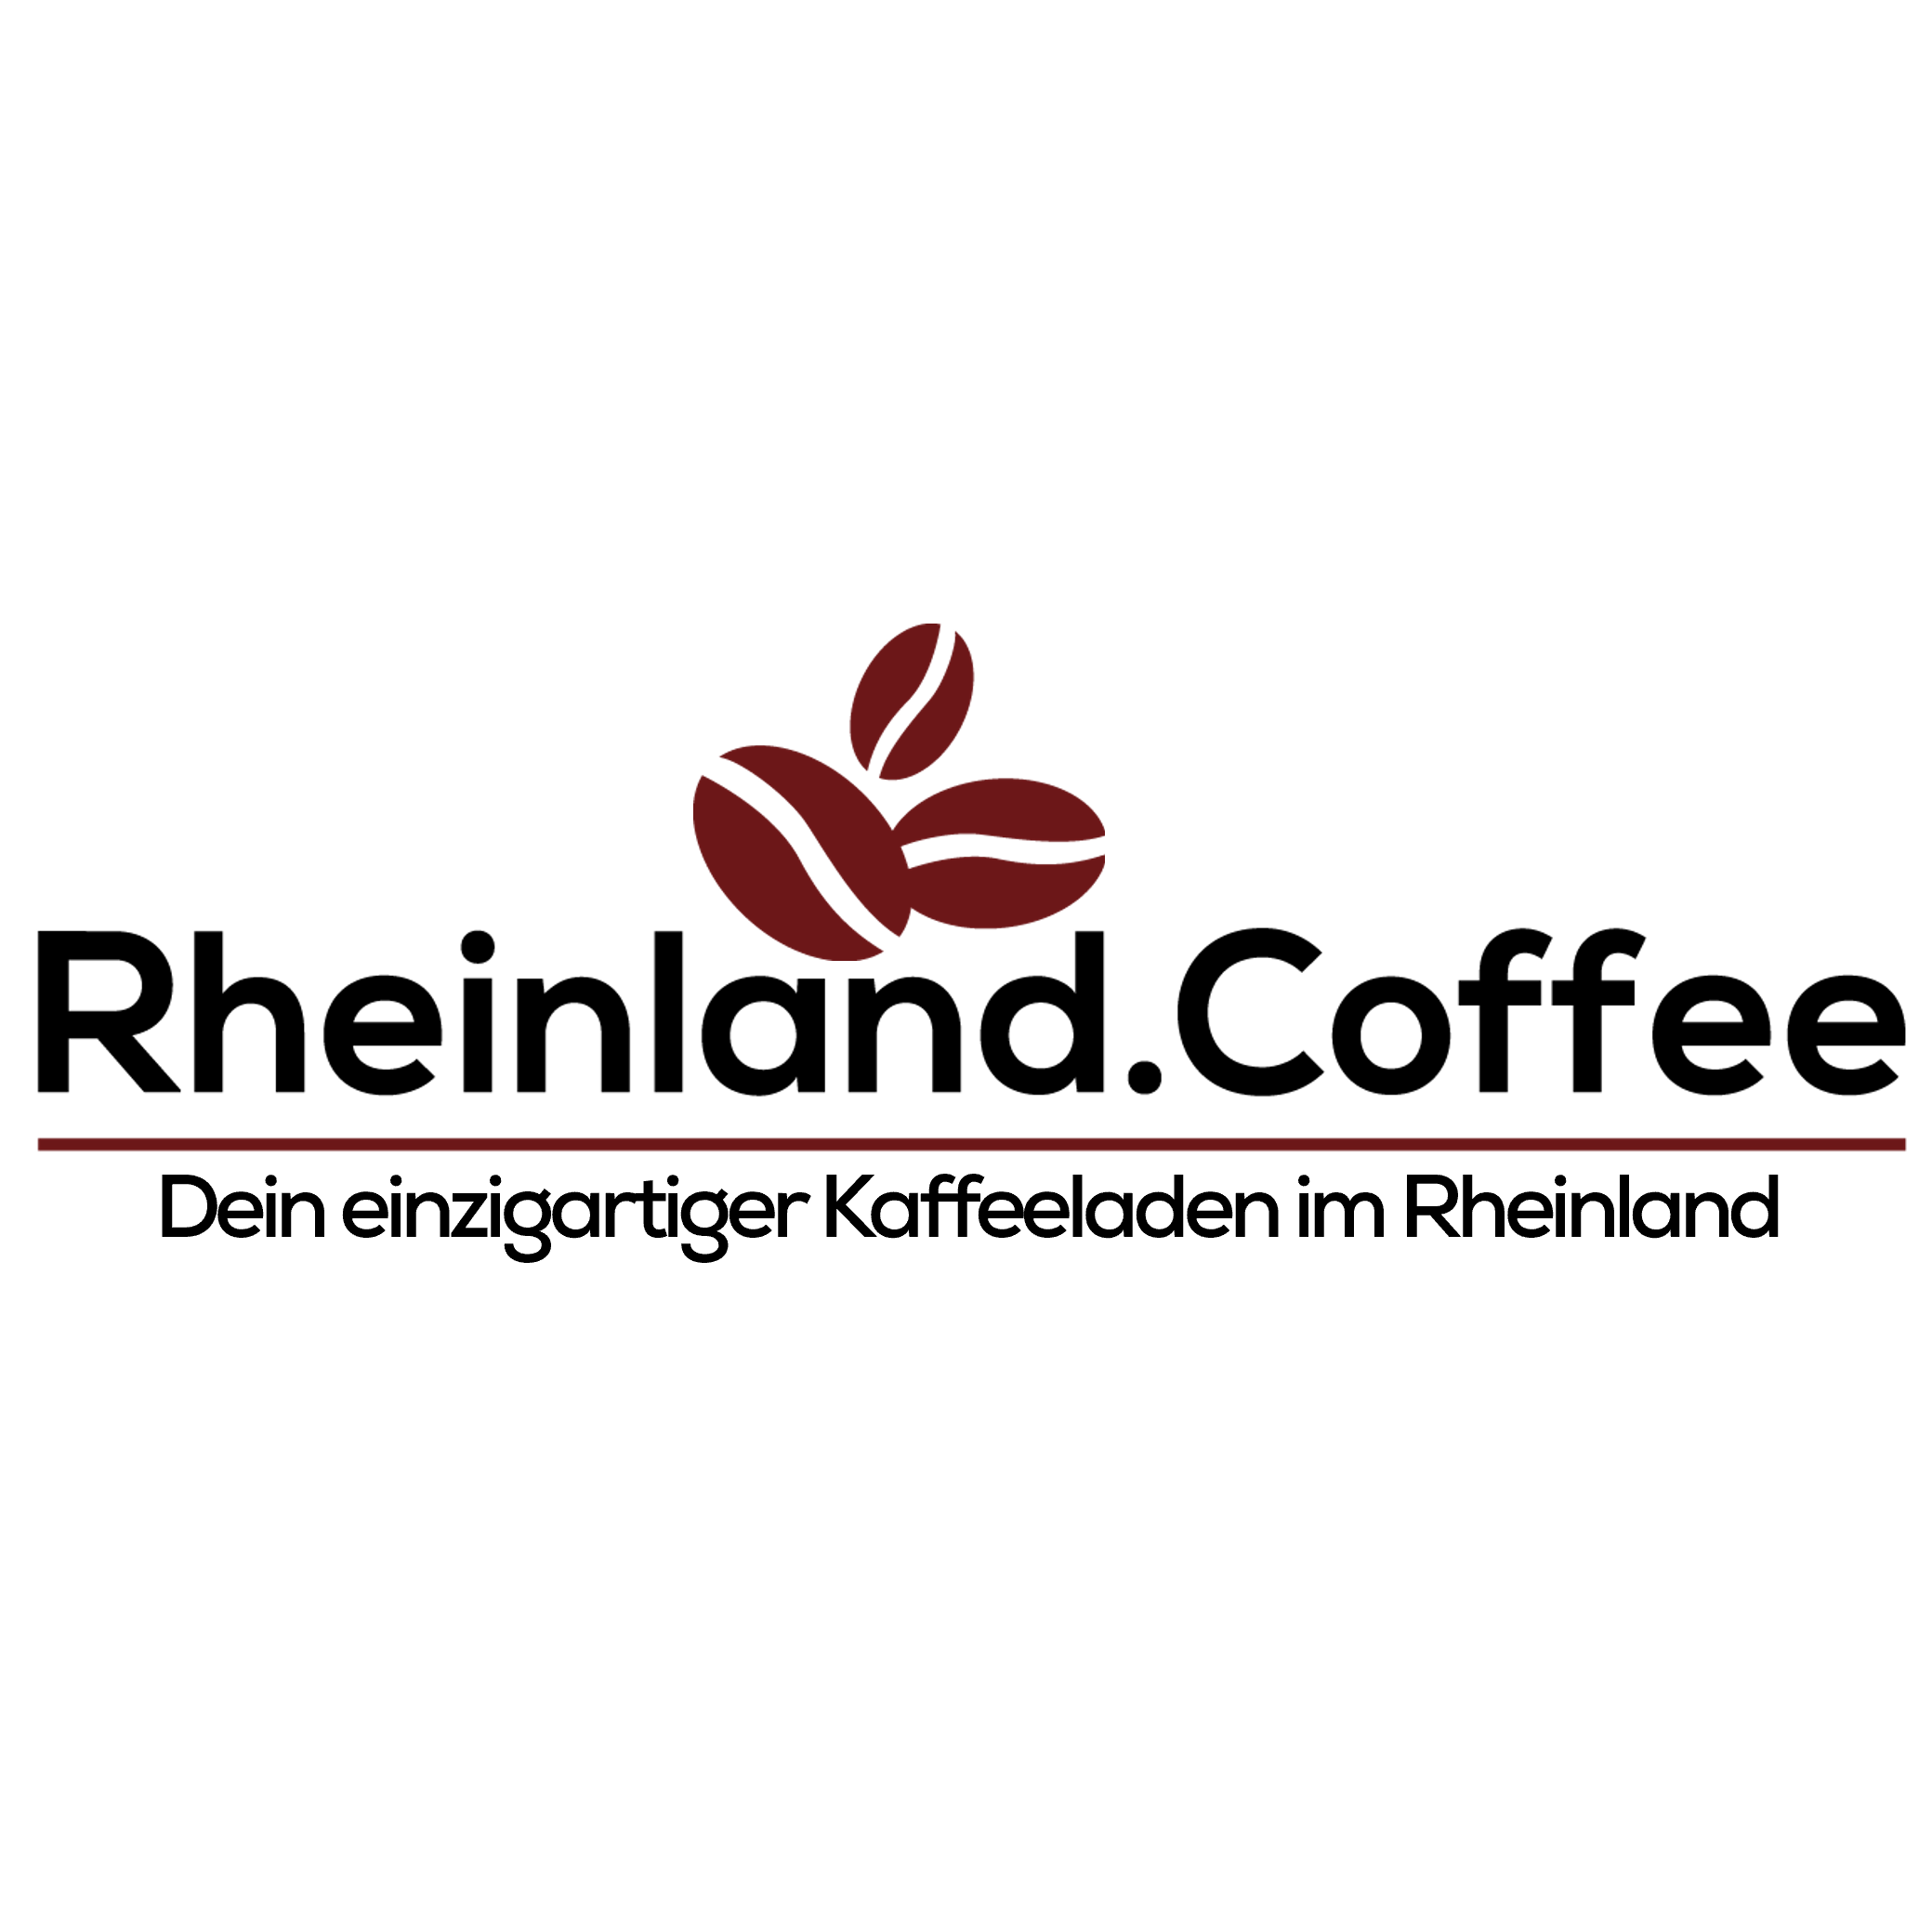 Rheinland.Coffee GmbH in Siegburg - Logo